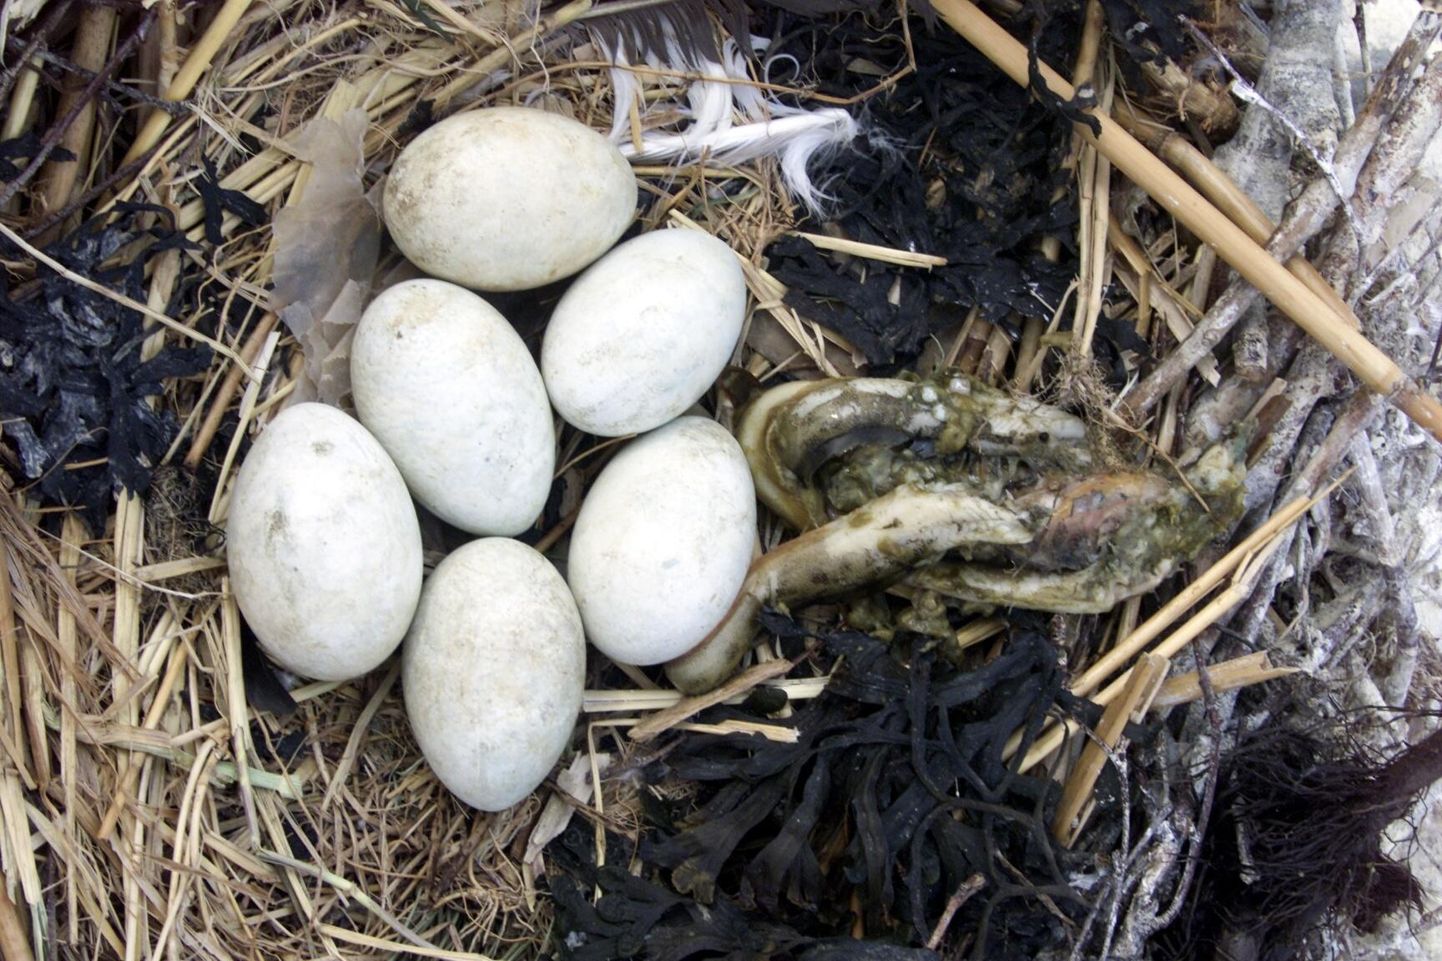 Õlitatud ­munades katkeb poegade arenguks ­vajalik gaasi­vahetus ja nii jäävad kormorani pojad koorumata.

 